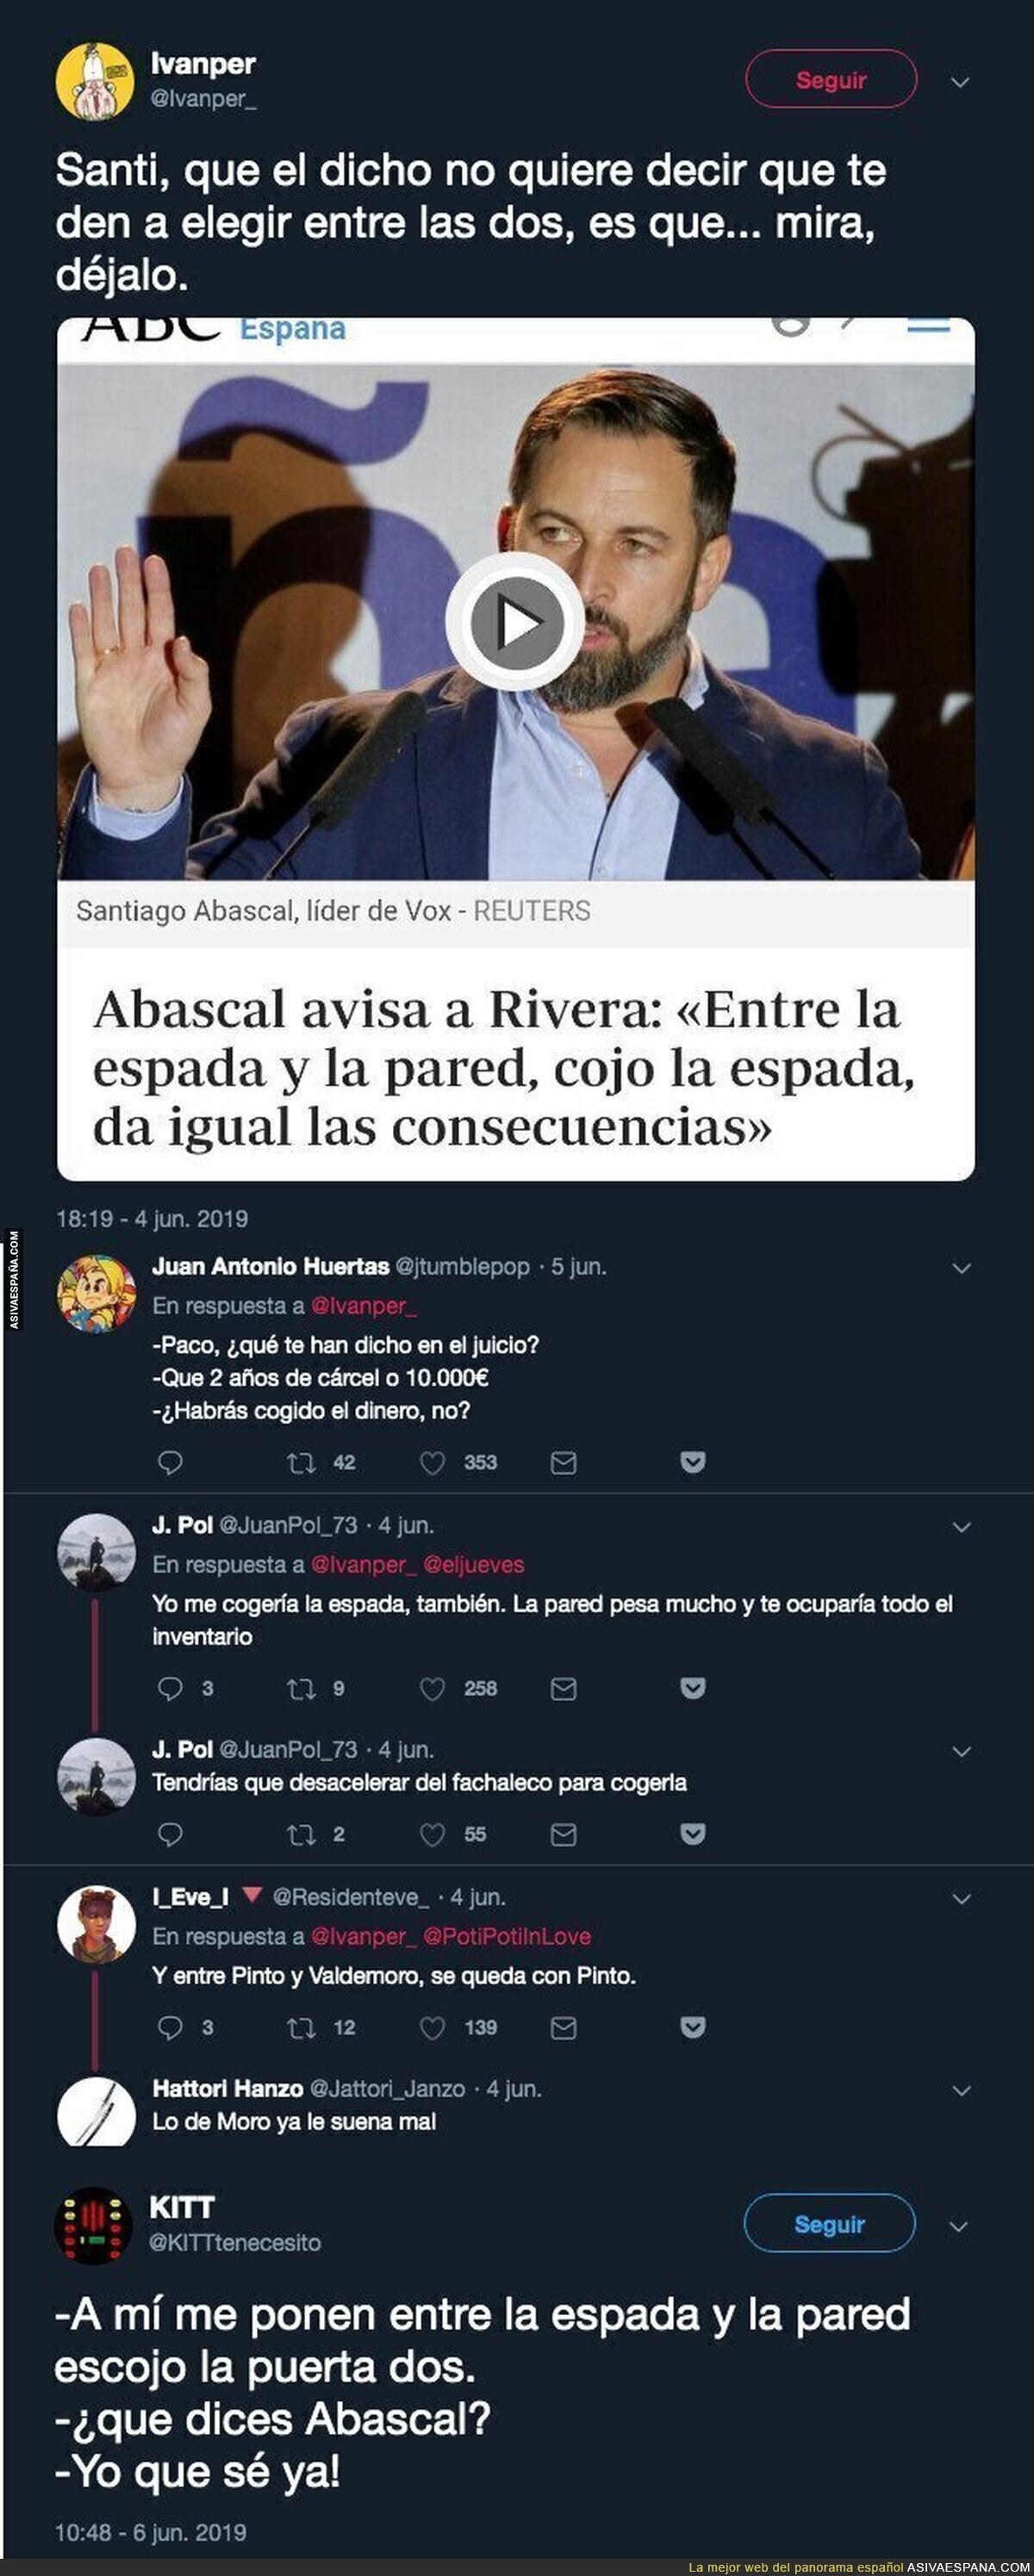 Santiago Abascal muy español pero conoce poco de los dichos populares